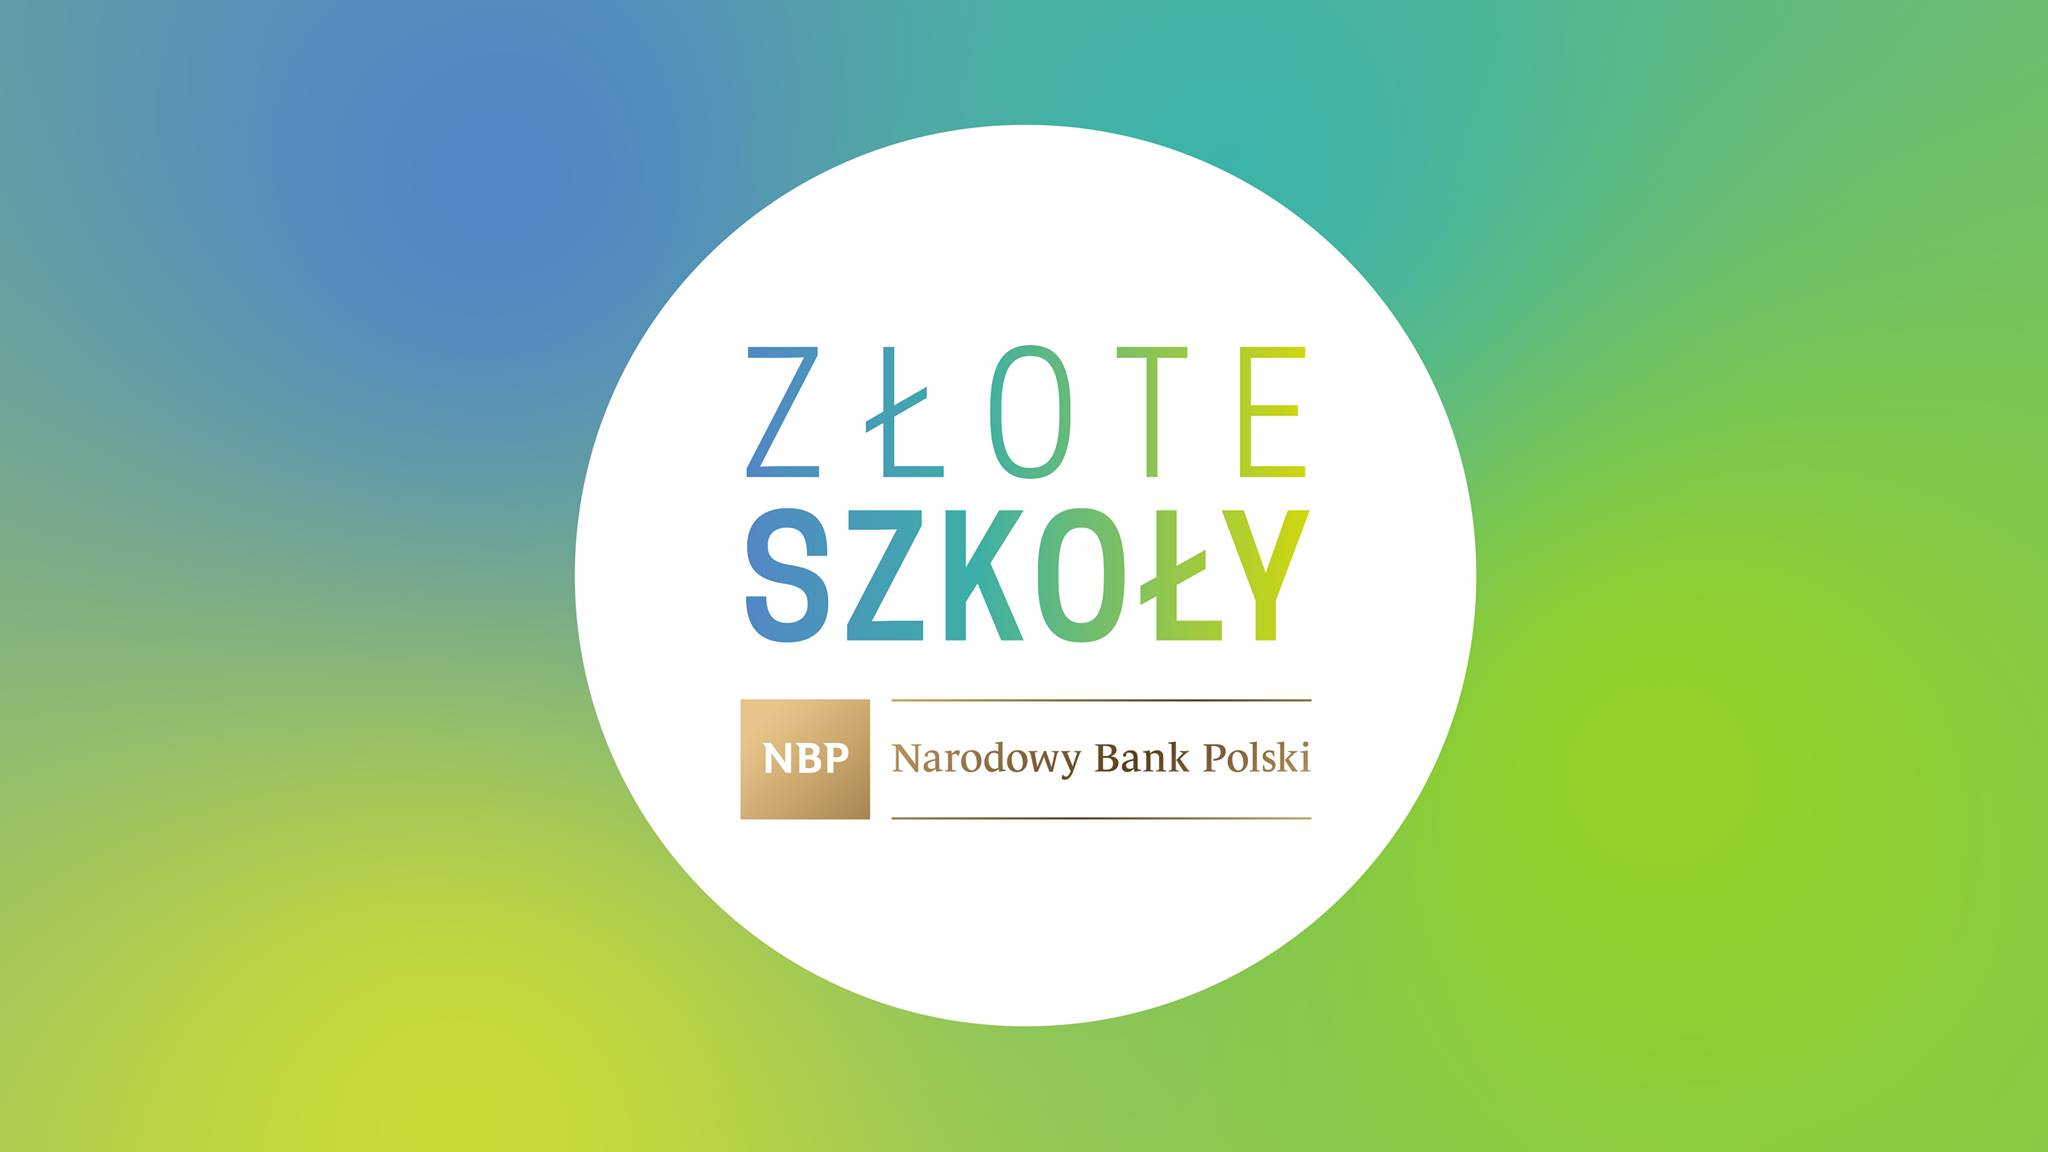 W białym kole niebiesko-zielony napis ZŁOTE SZKOŁY. Pod spodem logotyp NBP Narodowy Bank Polski.